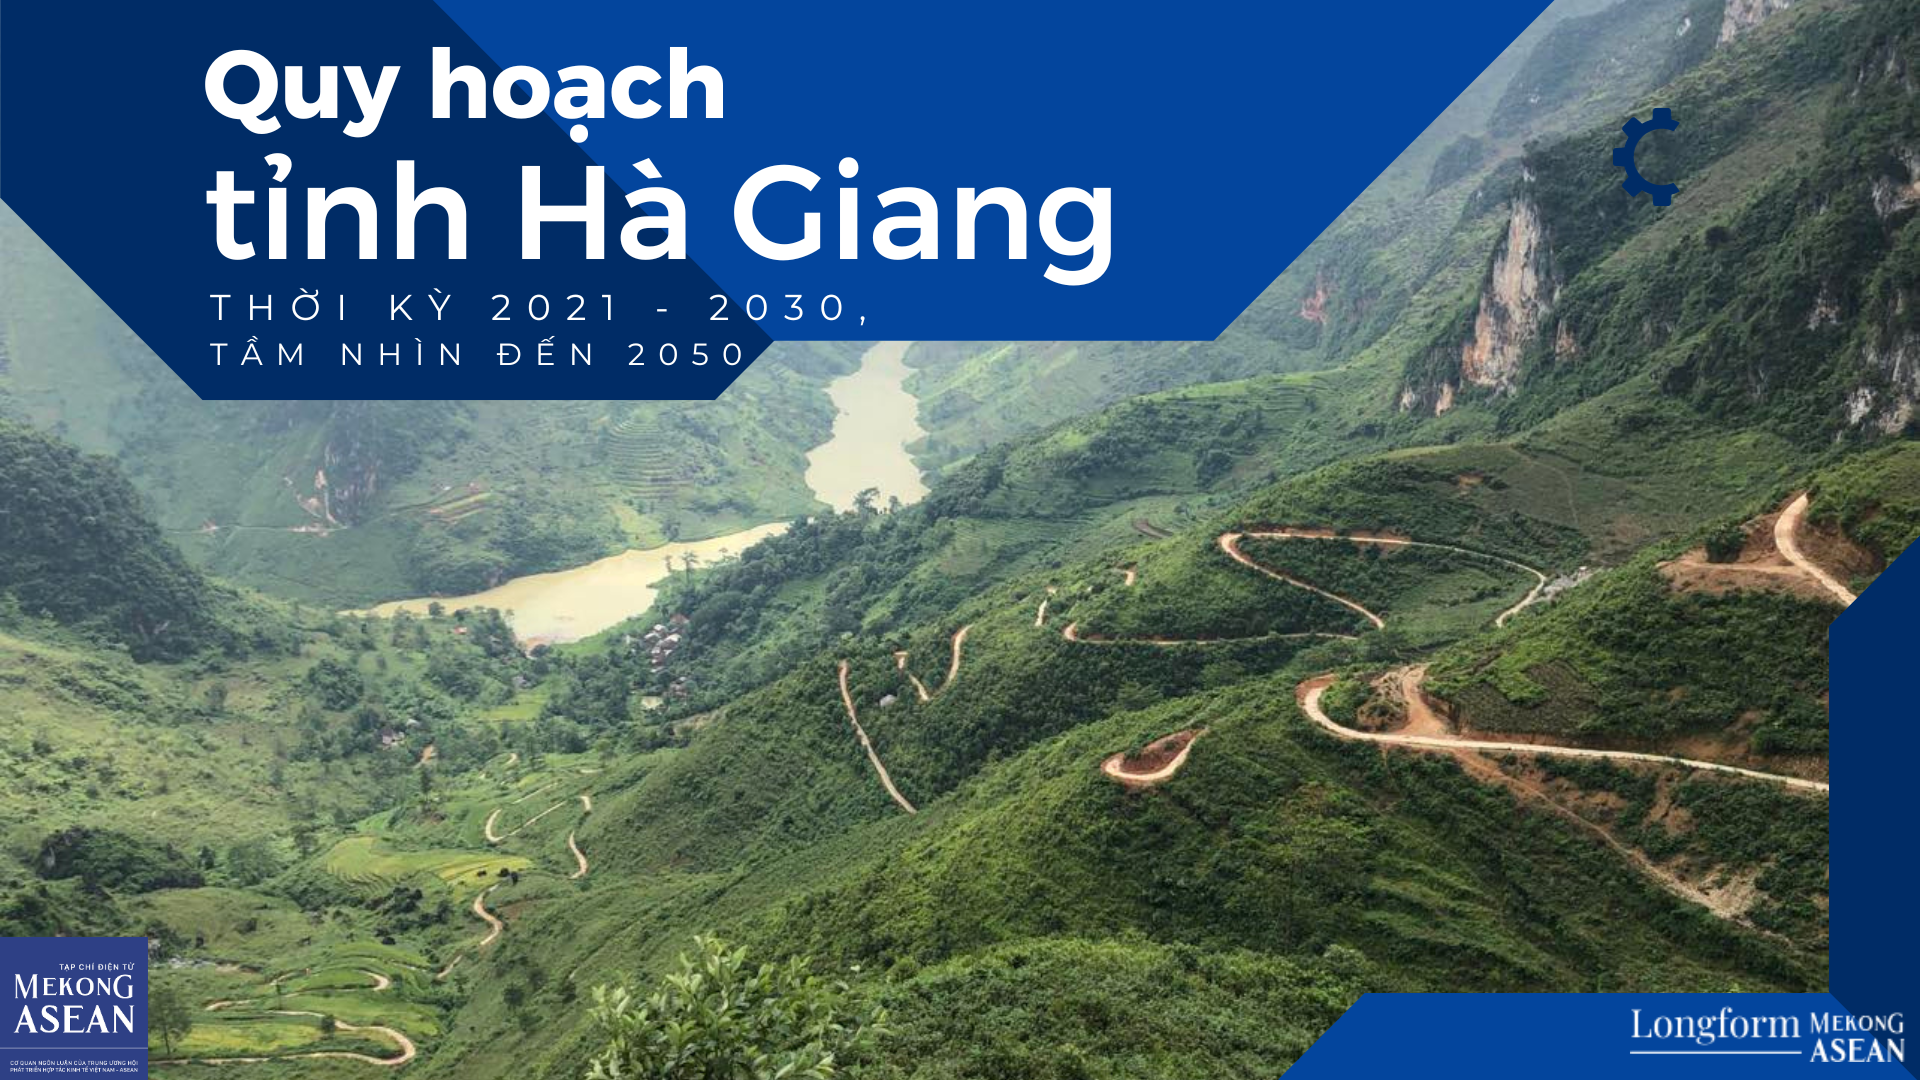 Quy hoạch tỉnh Hà Giang, những điểm nhấn chiến lược 